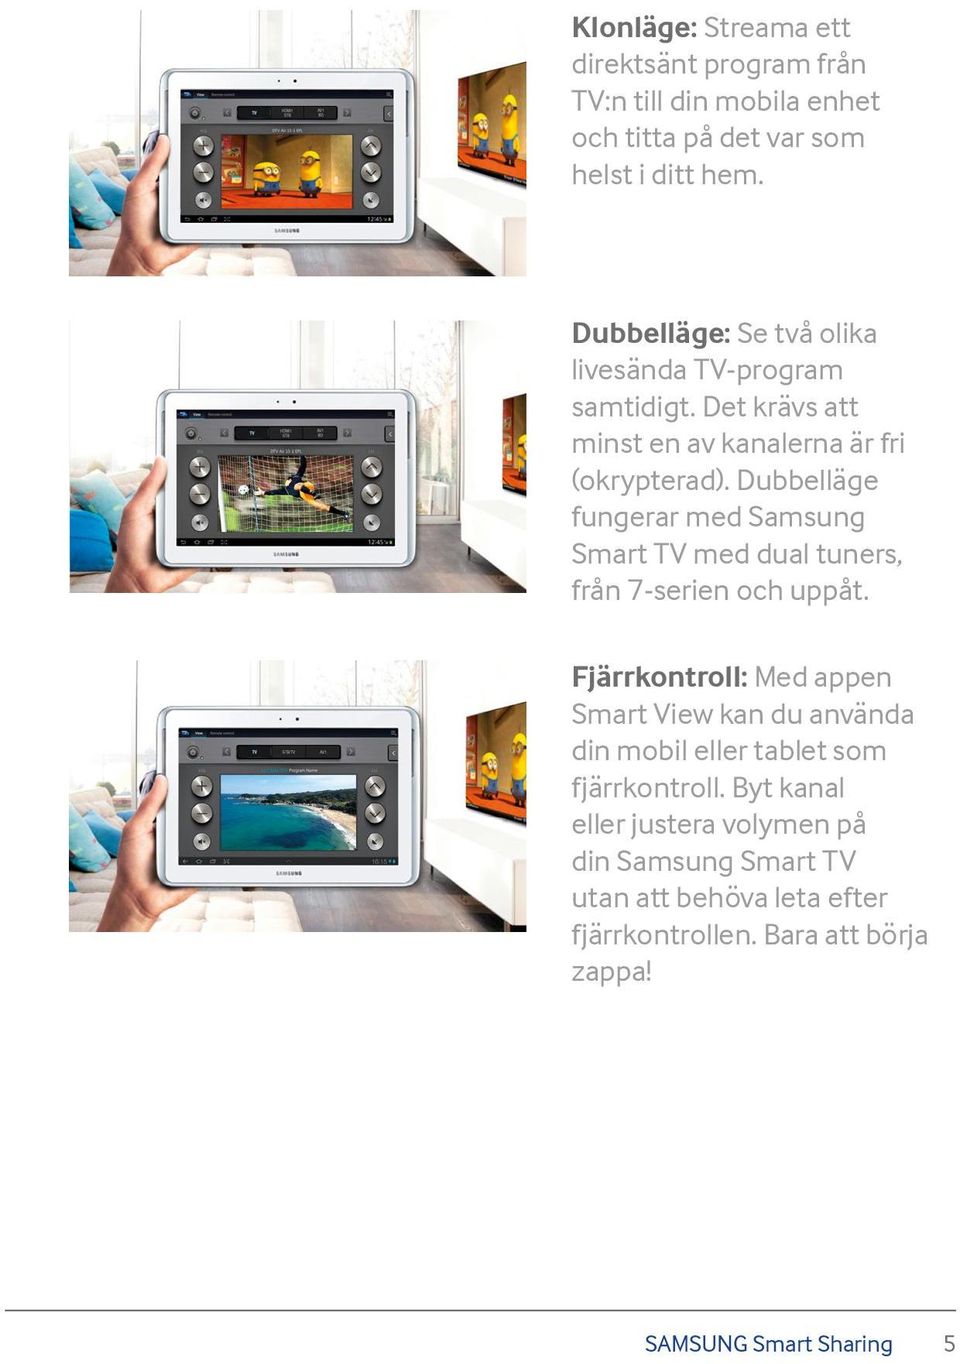 Dubbelläge fungerar med Samsung Smart TV med dual tuners, från 7-serien och uppåt.